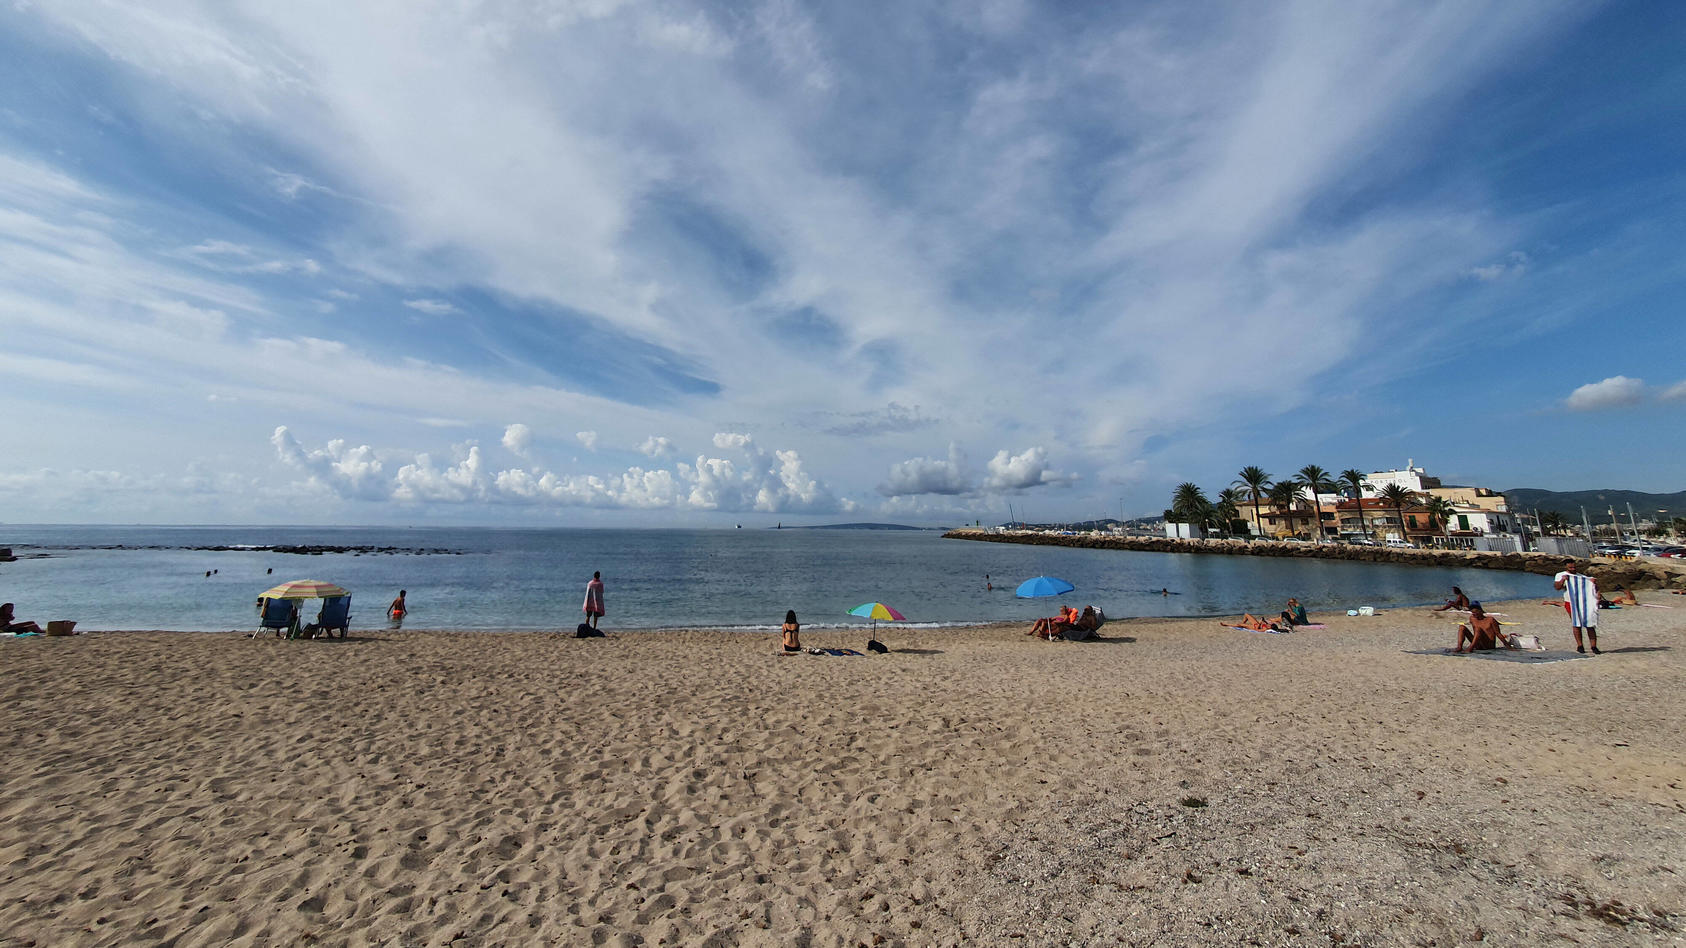 Ein Strand auf Mallorca im Coronasommer 2020. Trotz Reisewarnung sind die Preise für einen Urlaub in den Sommerferien ziemlich hoch. Außerhalb der Ferien kann man aber auf gute Angebote stoßen.